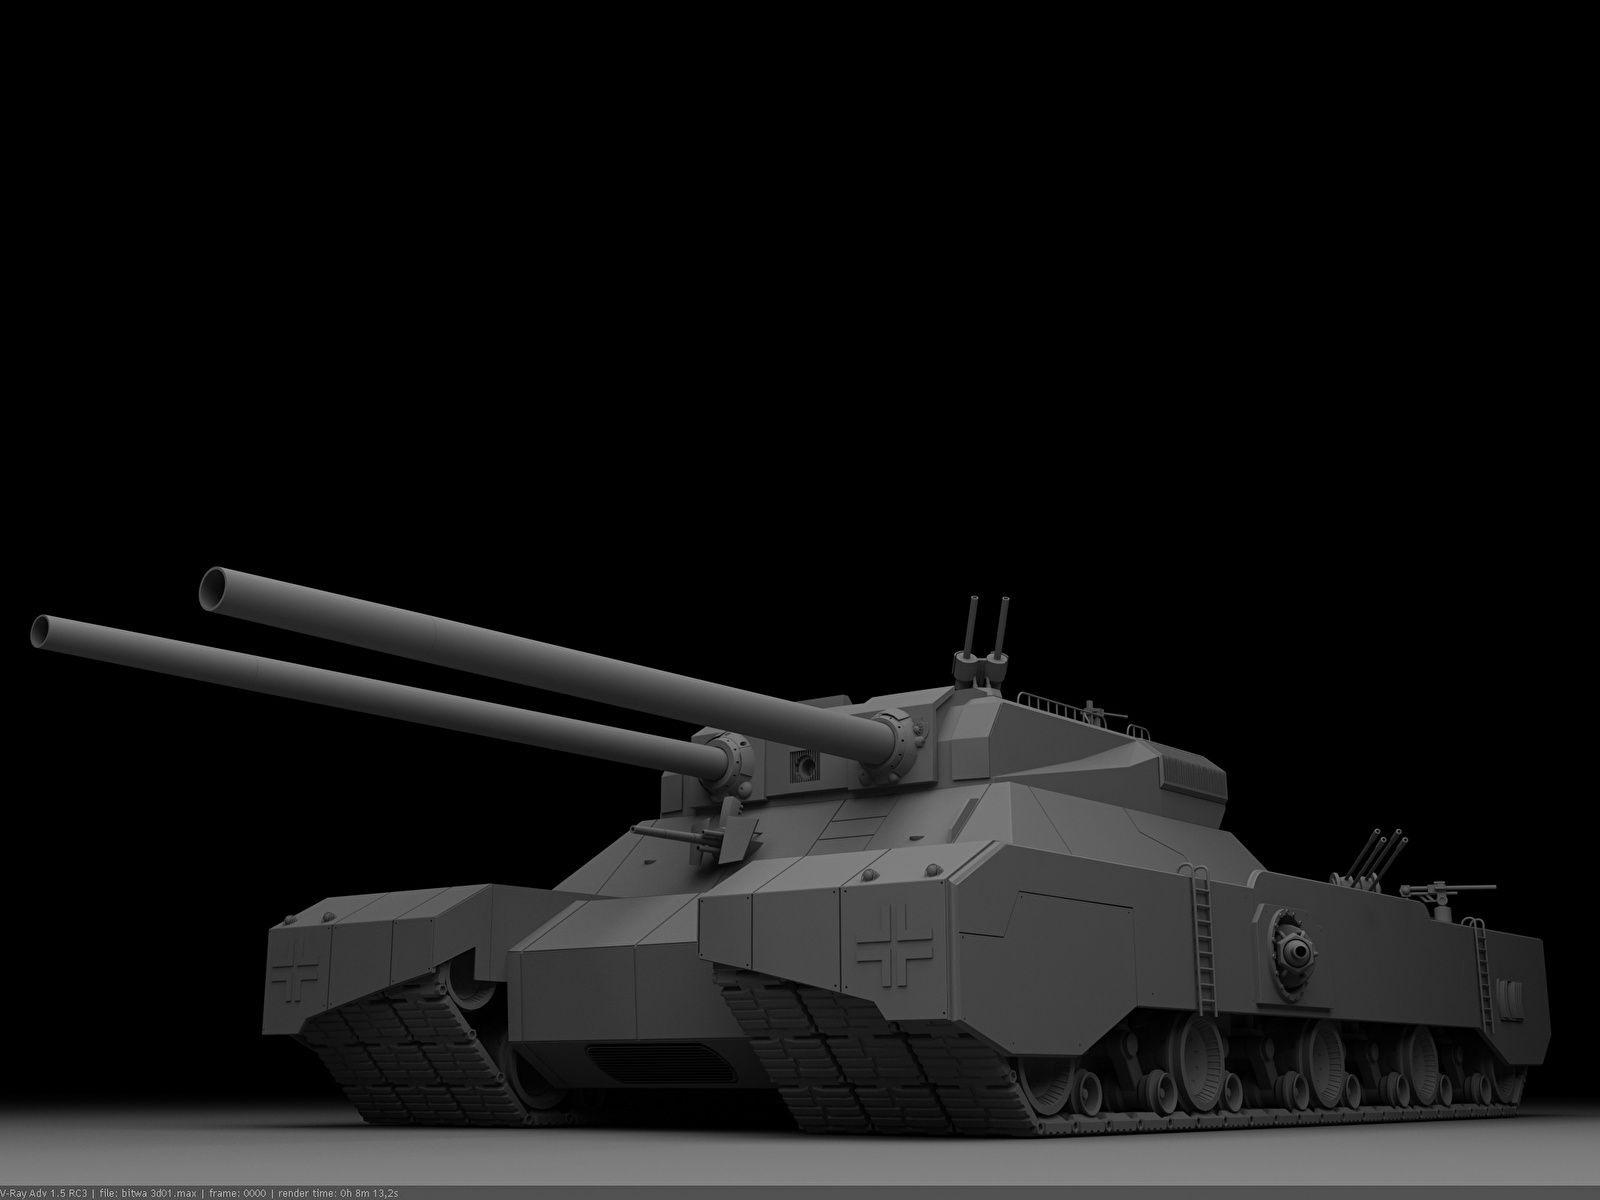 Image Tanks Landkreuzer P.1000 Ratte gray 3D Graphics 1600x1200